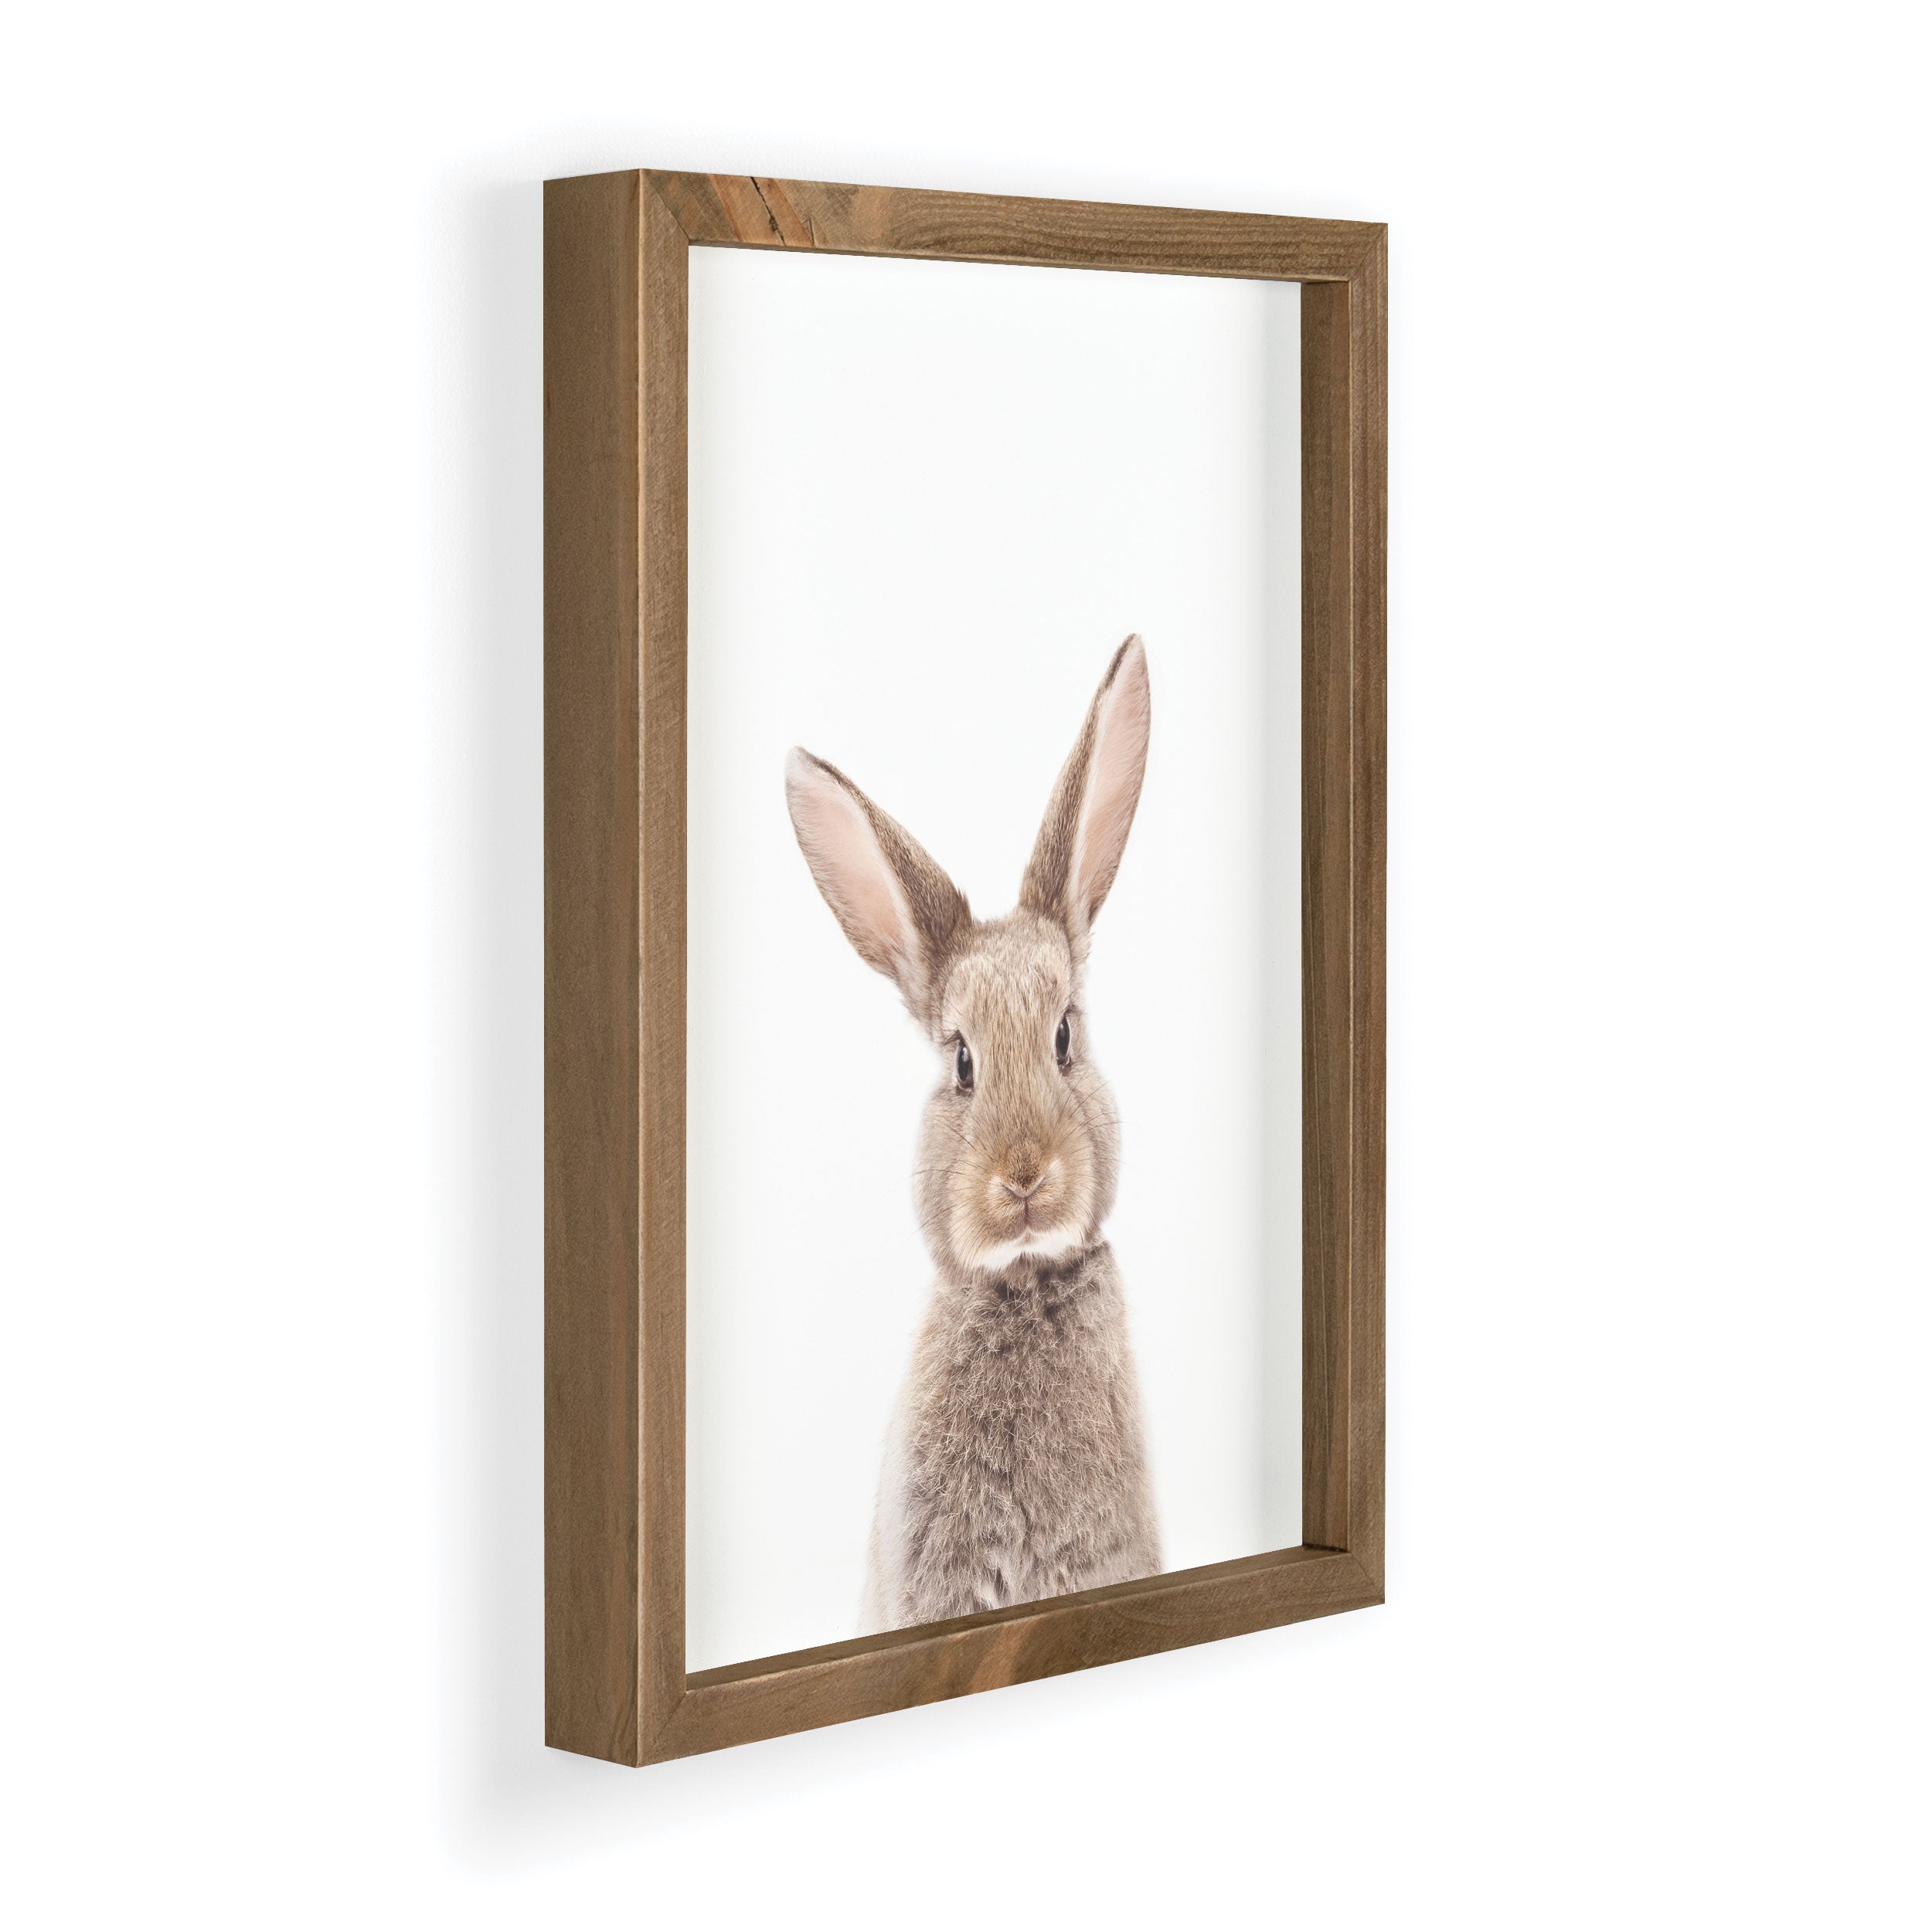 Rabbit Framed Art